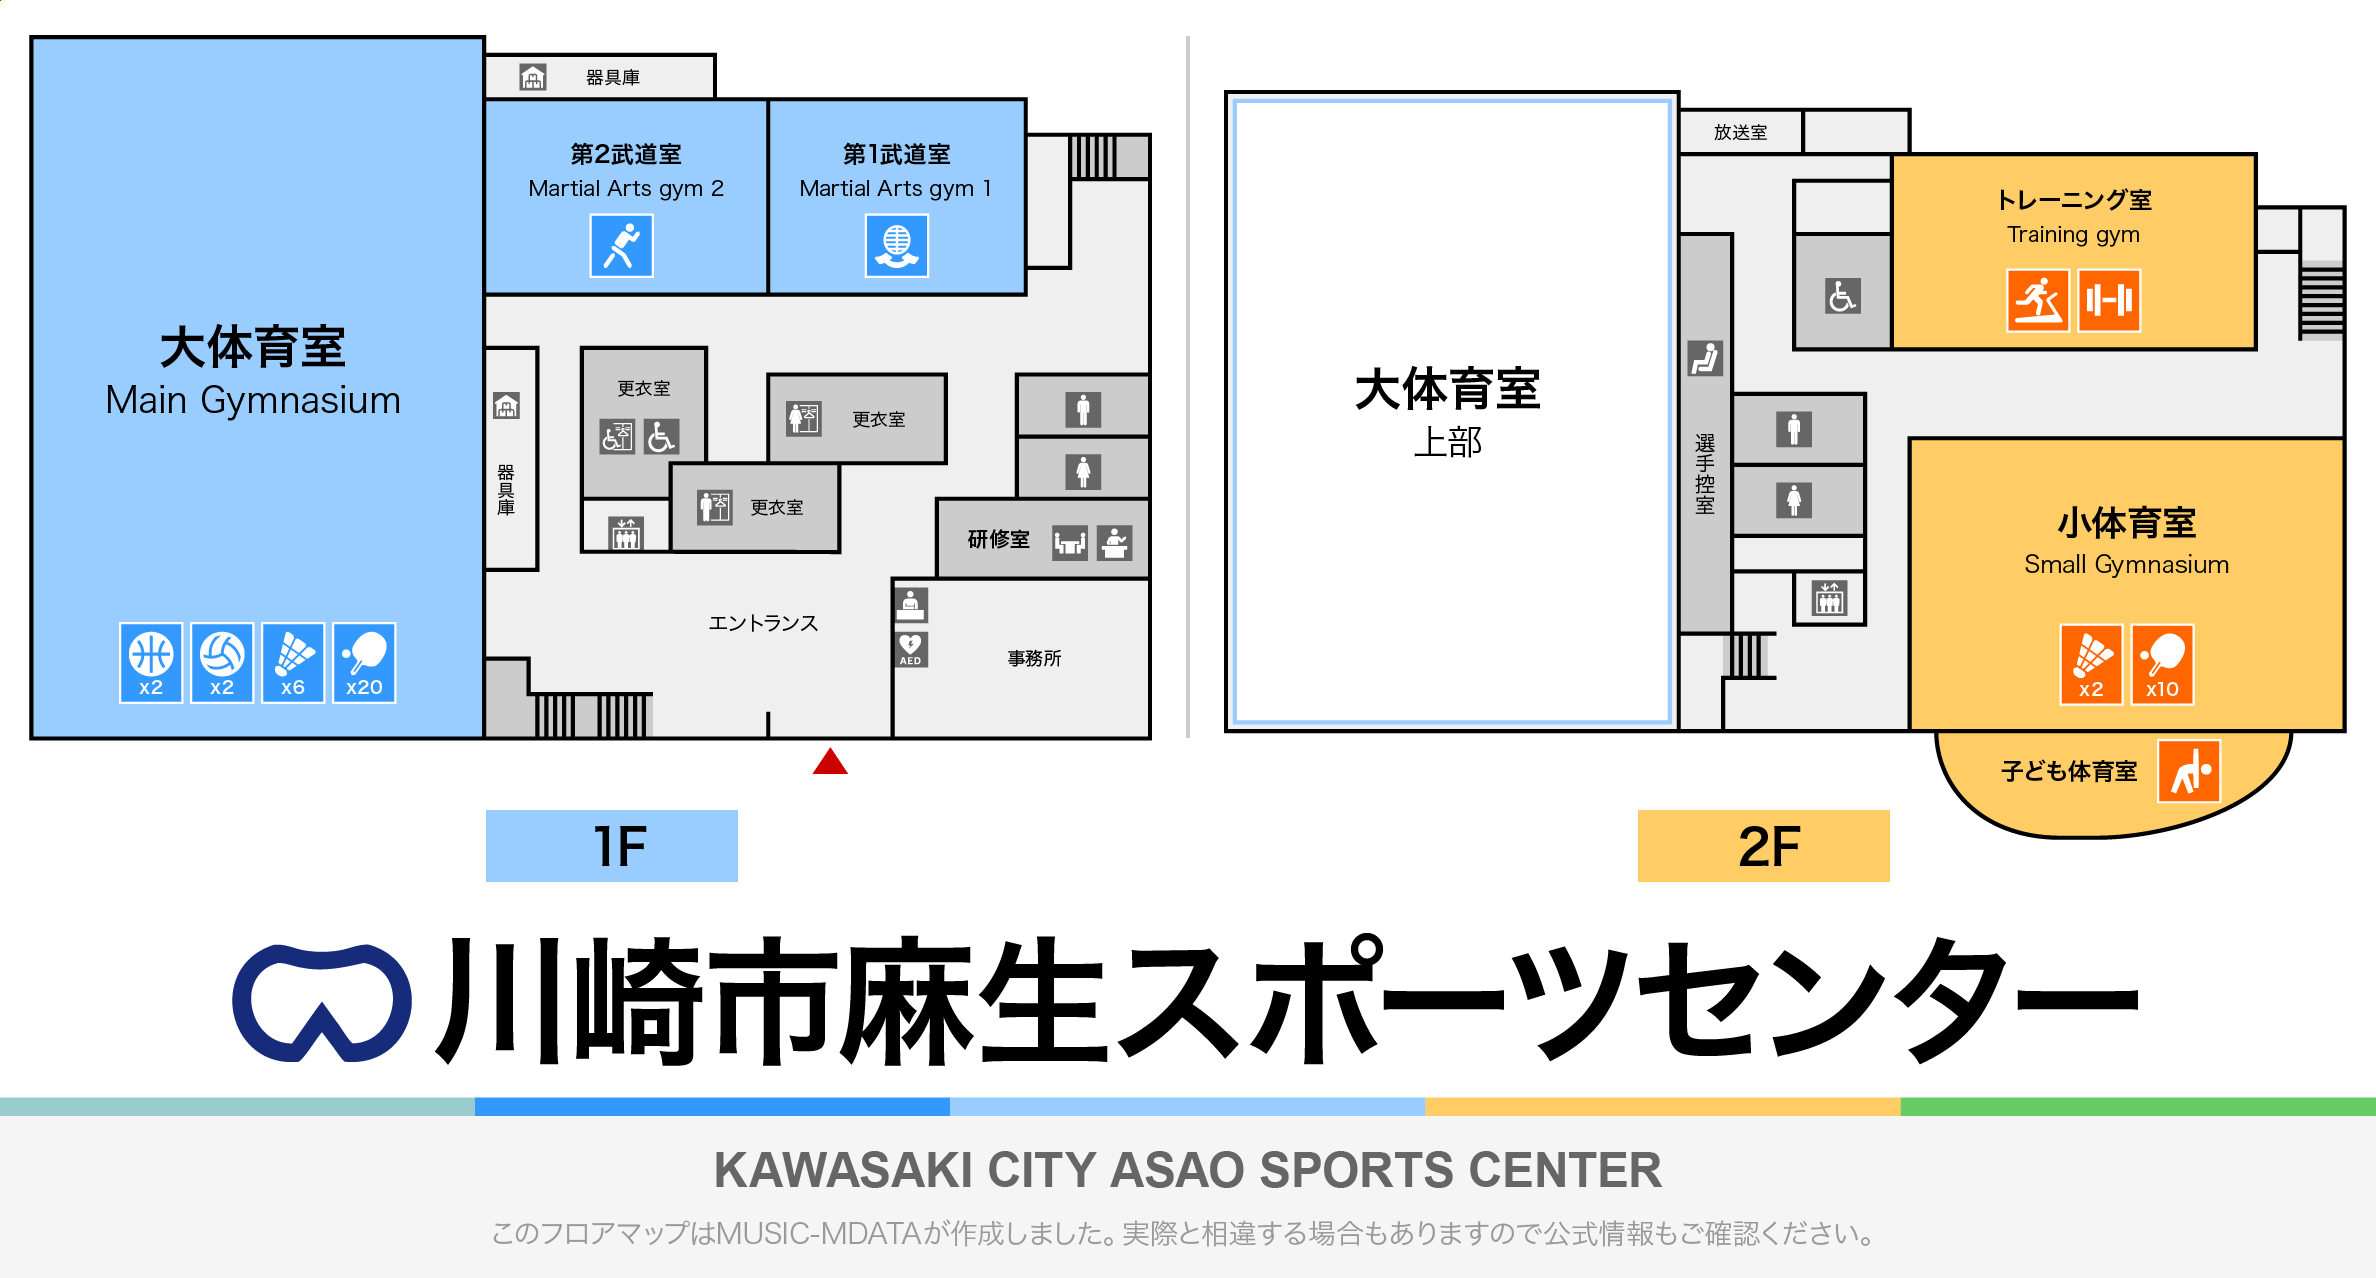 川崎市麻生スポーツセンターのフロアマップ・体育館